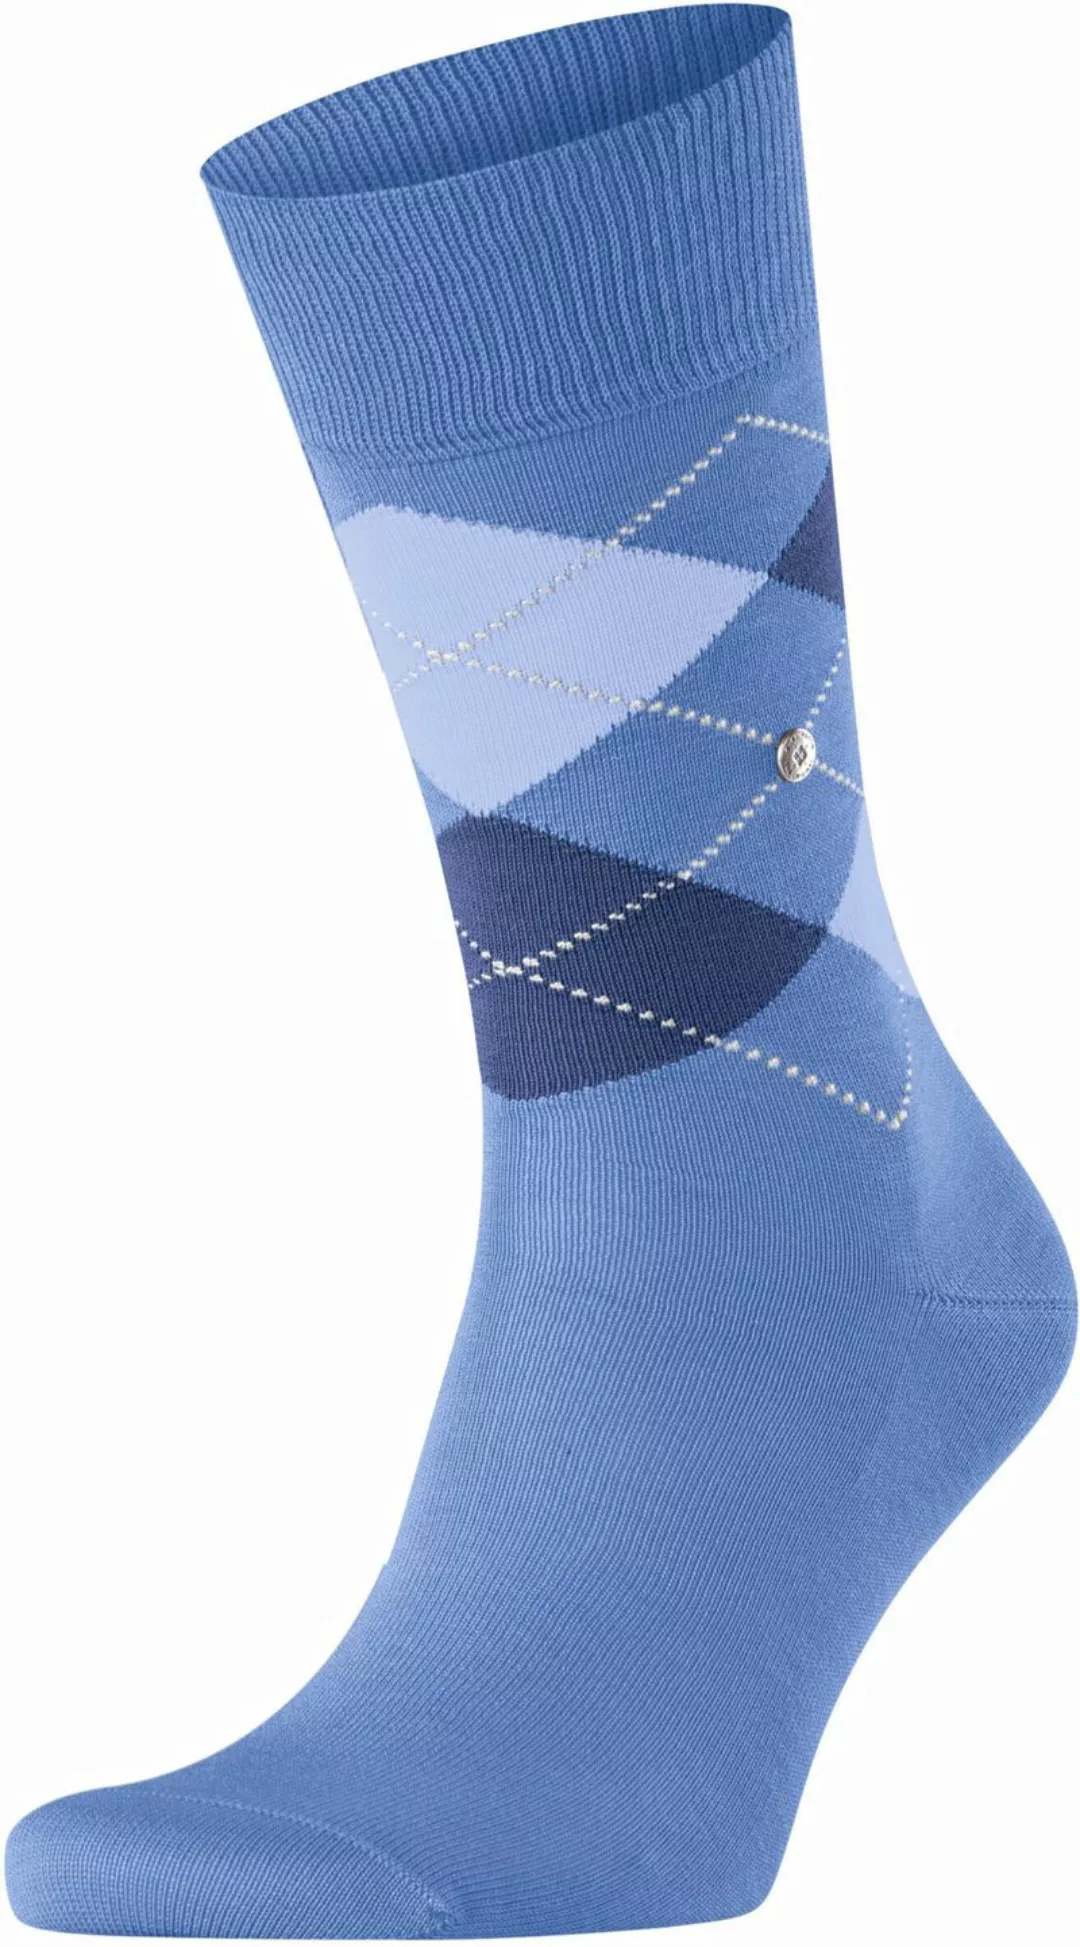 Burlington Manchester Socken Kariert Blau 6550 - Größe 40-46 günstig online kaufen